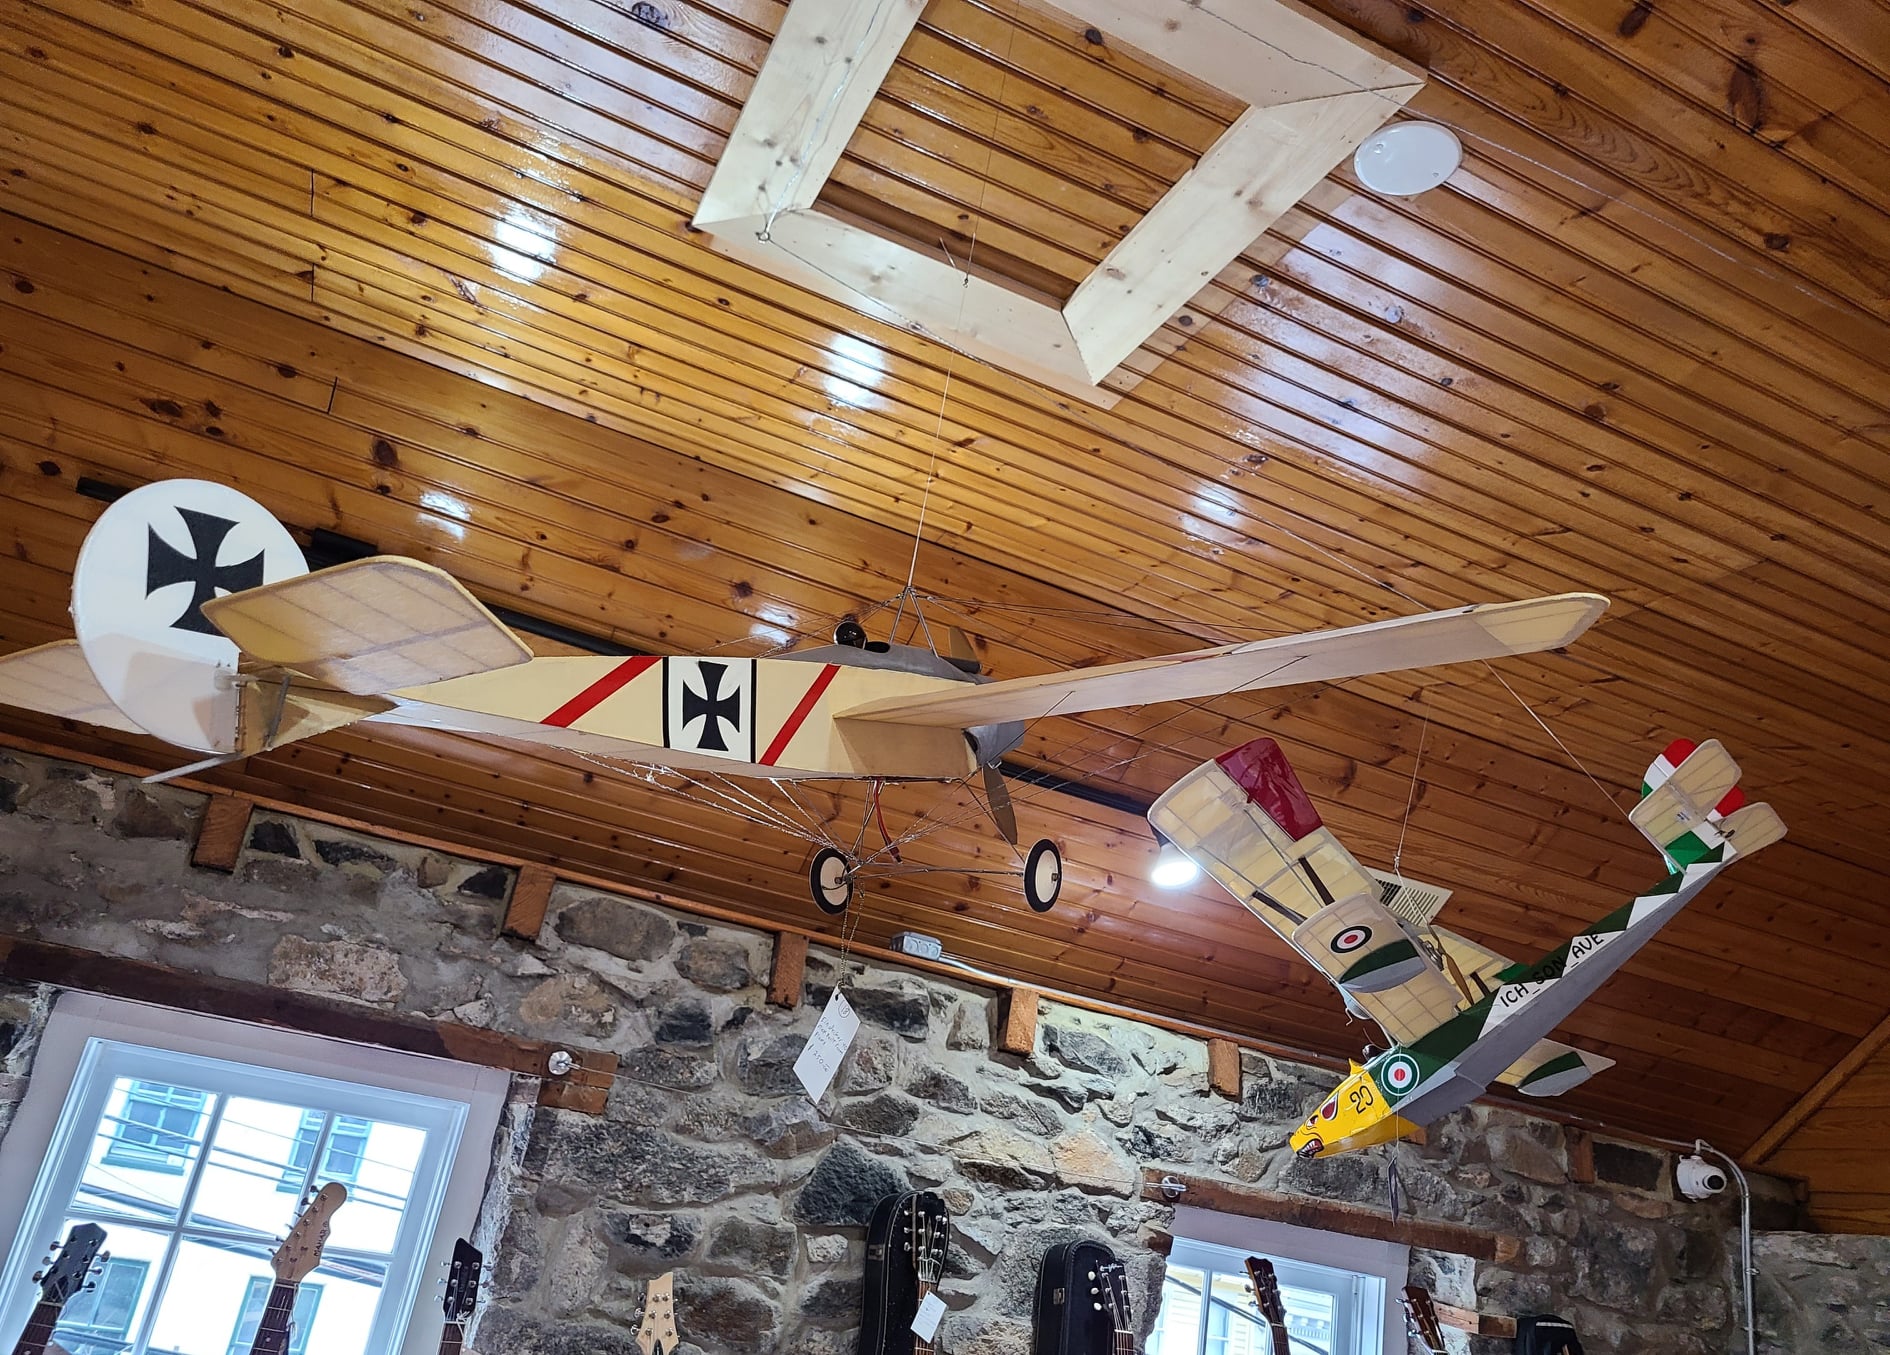 Vintage toy airplanes